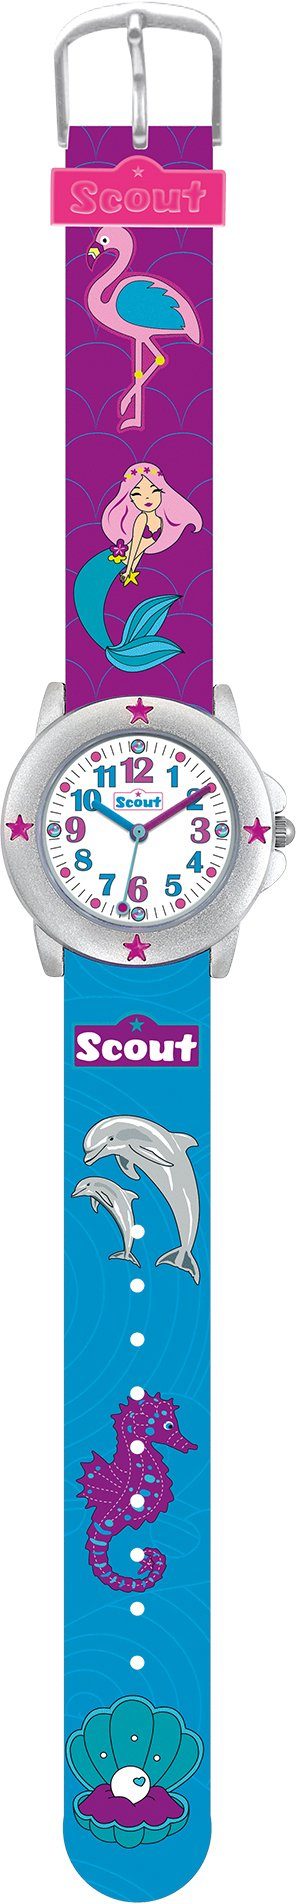 Scout Quarzuhr Star Kids, 280393023, Muschel-Delphin-,Meerjungfraumotiv, ideal auch als Geschenk | Quarzuhren